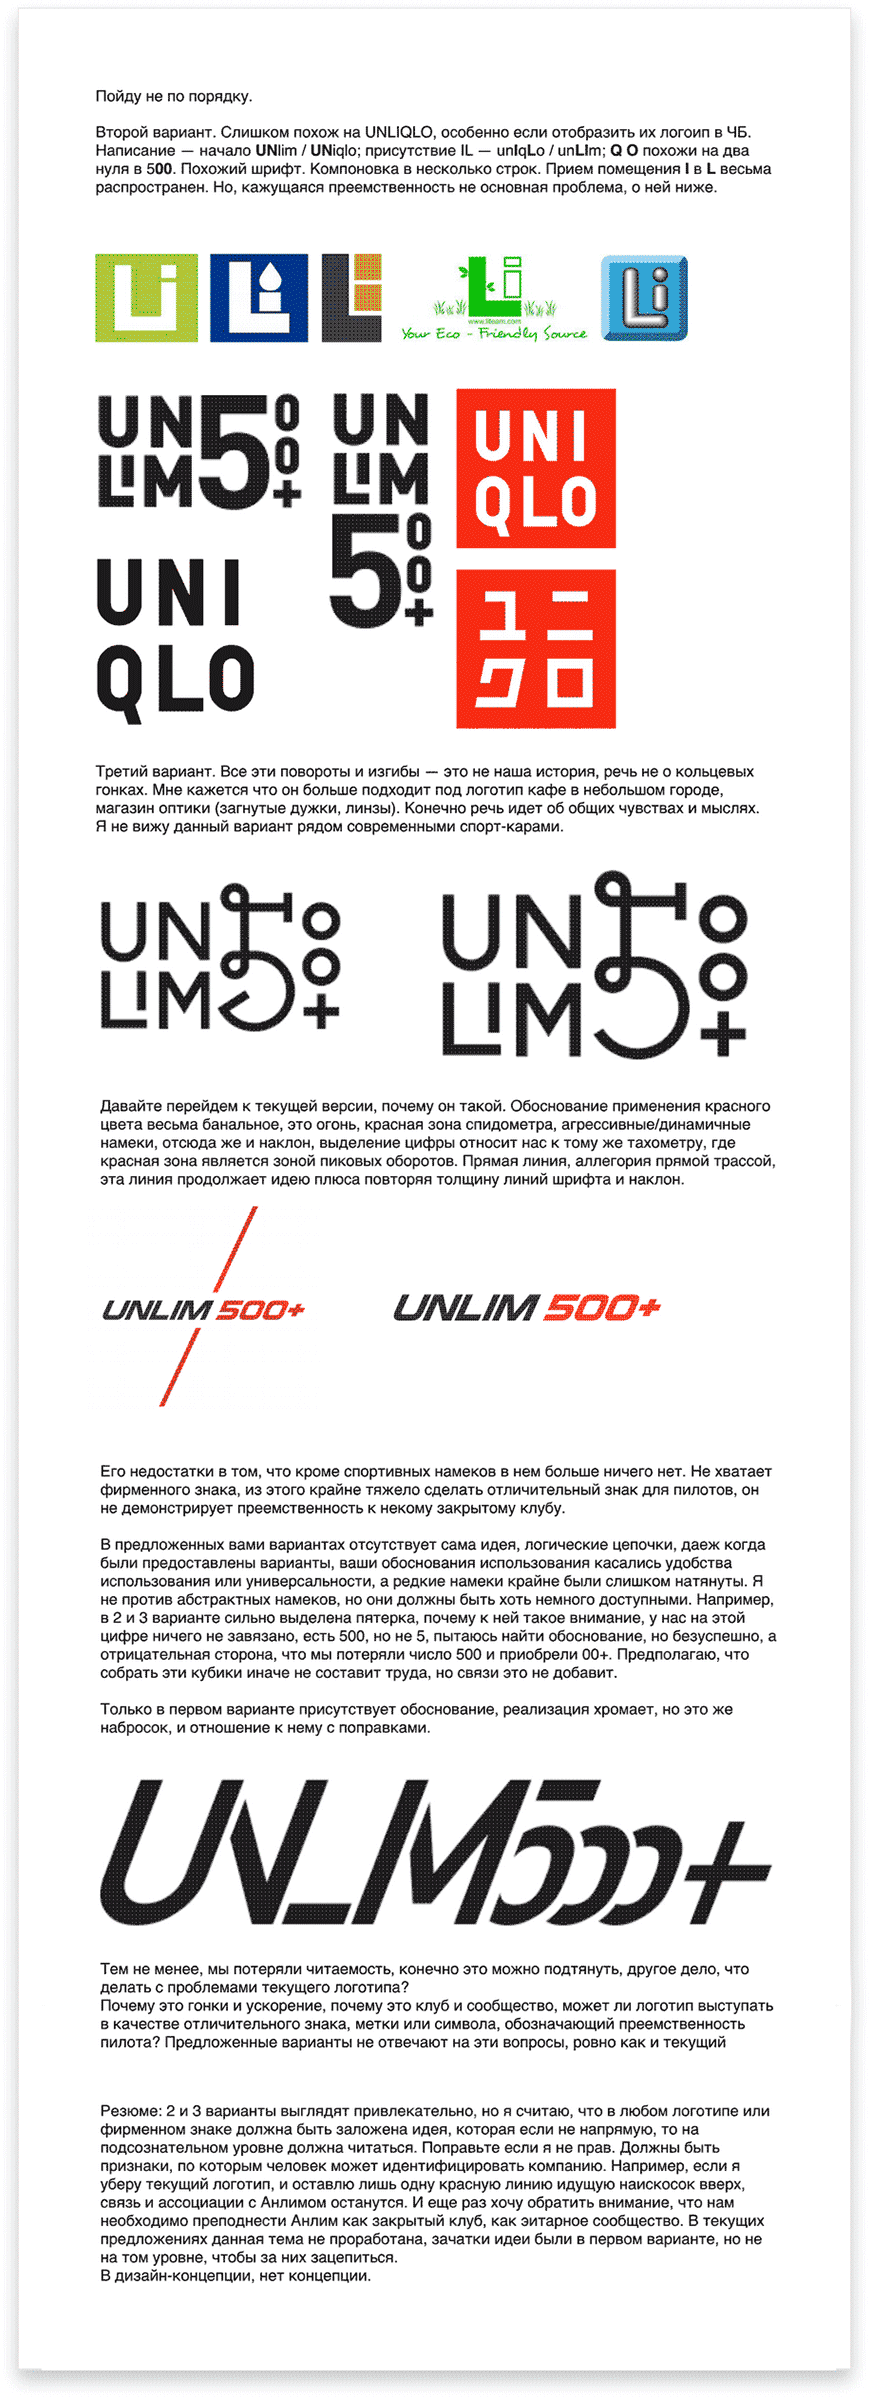 unlim500 logo process letter 02